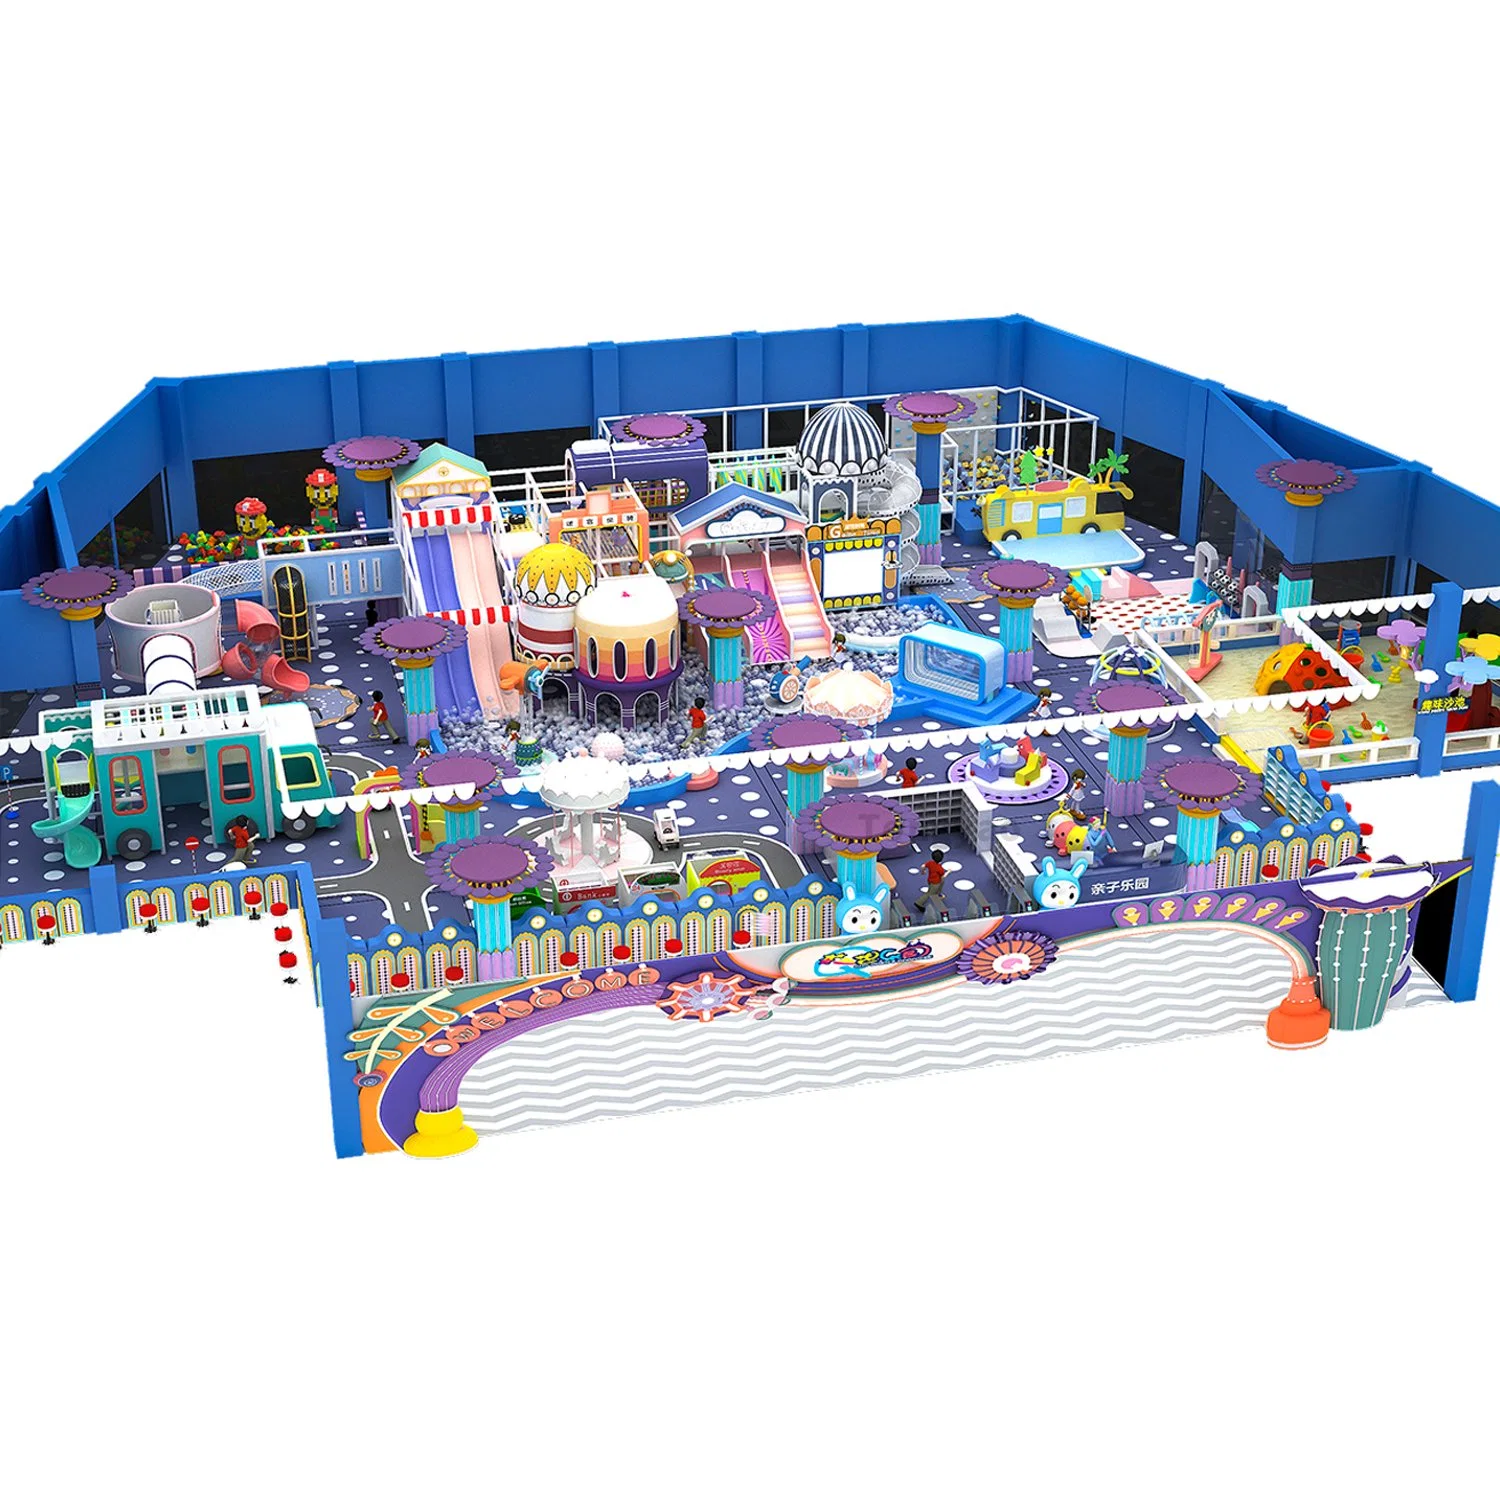 Escorrega de brinquedo para crianças Parque de diversões Trampolim Parque de diversões Play indoor macio para crianças.